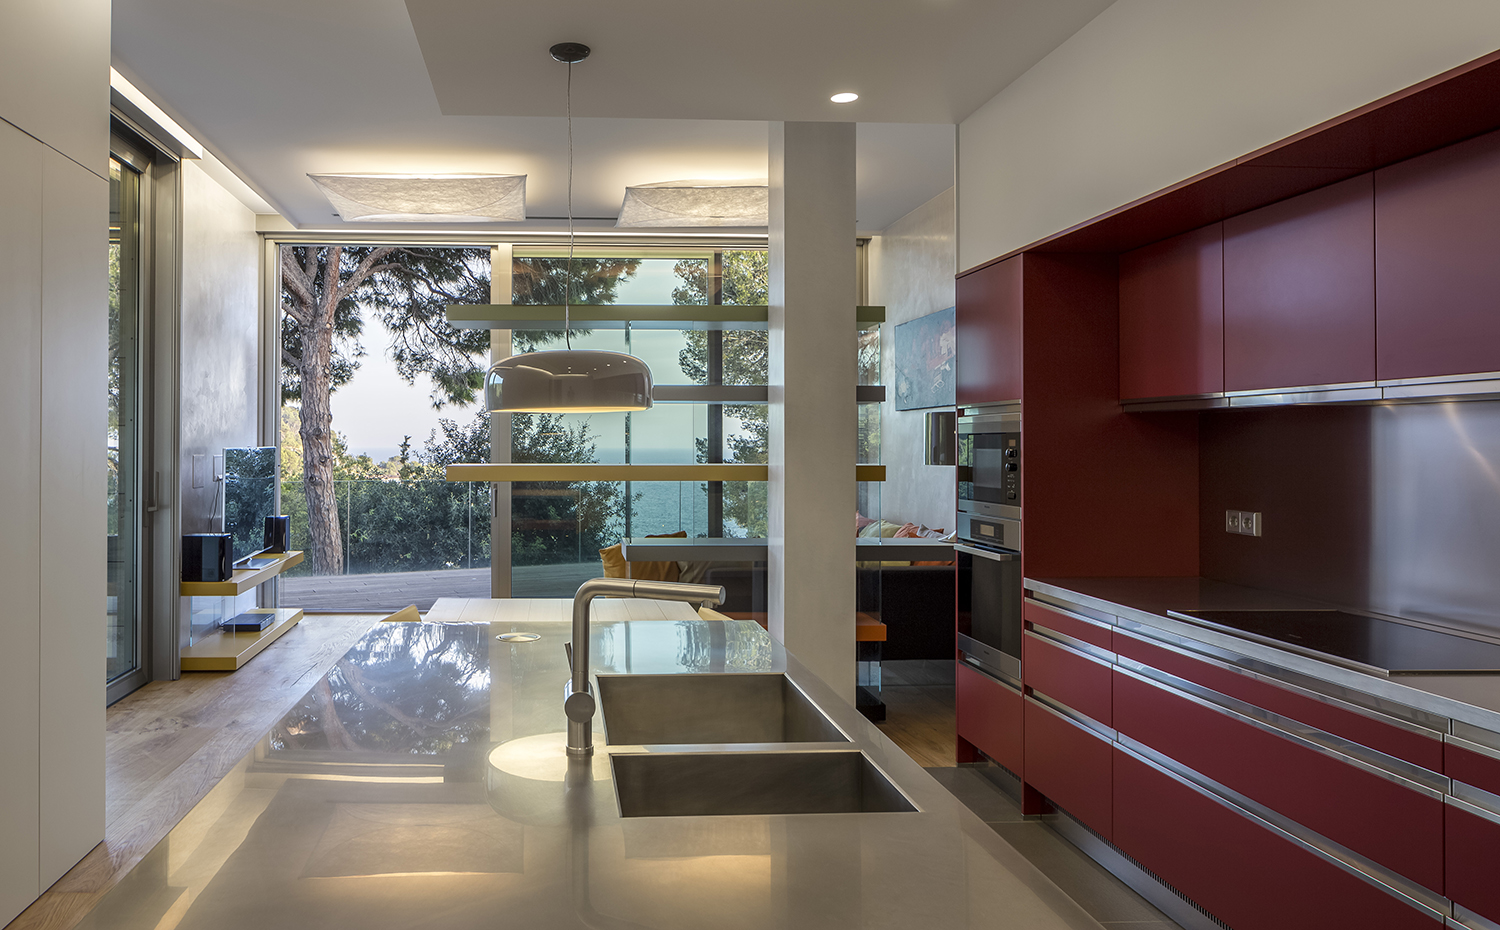 SG1475b 3350. La cocina del apartamento cuenta con el modelo Convivium Elegant color laca mate Vinaccia de Arclinea. Encimera en acero inoxidable esmerilado de 5 cm de grosor